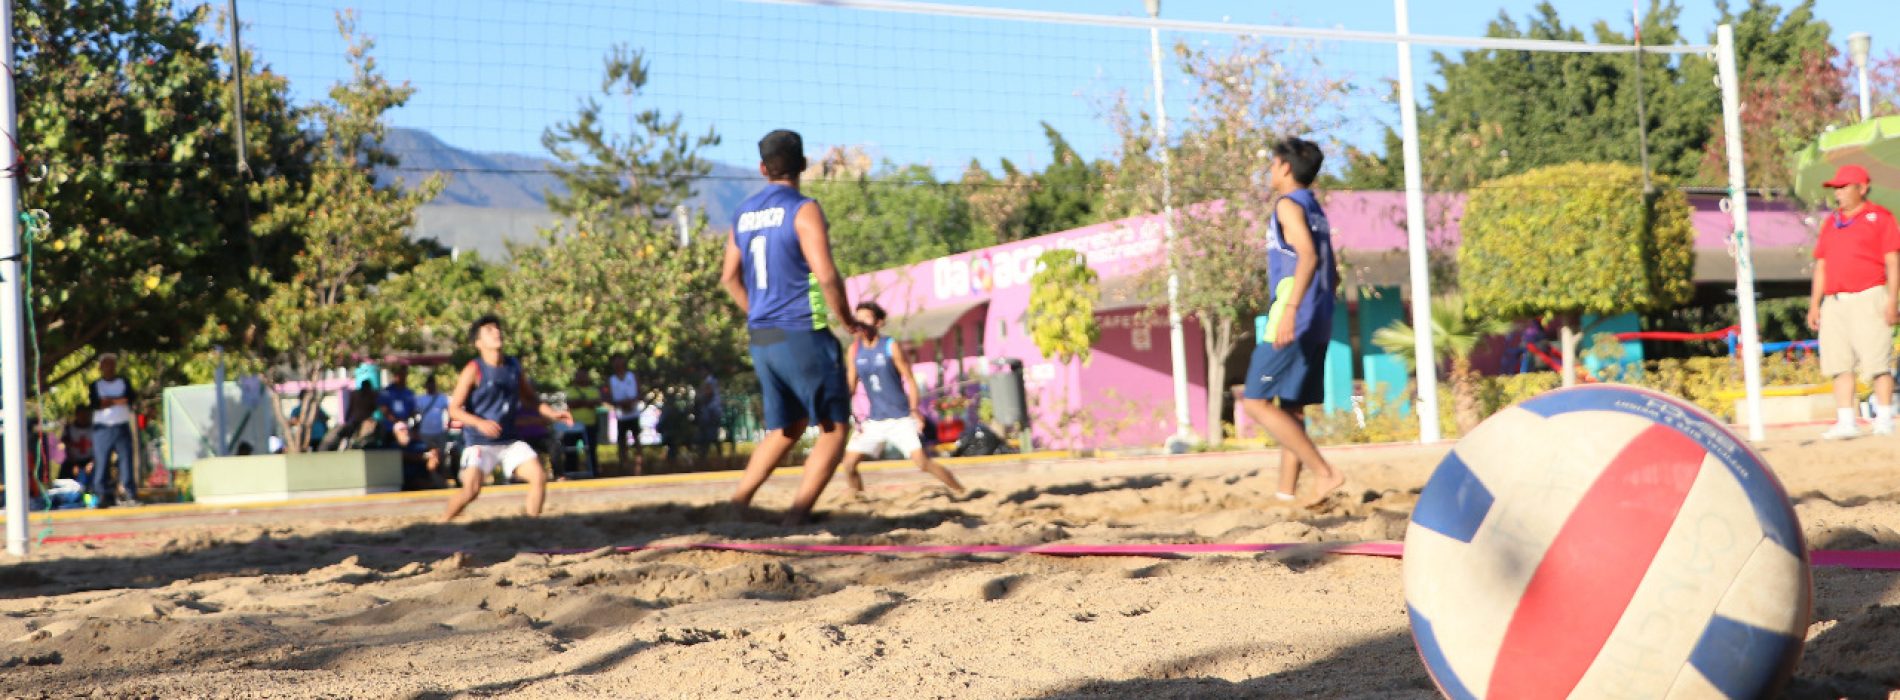 El voleibol de playa y sala definen representantes para Juegos Nacionales